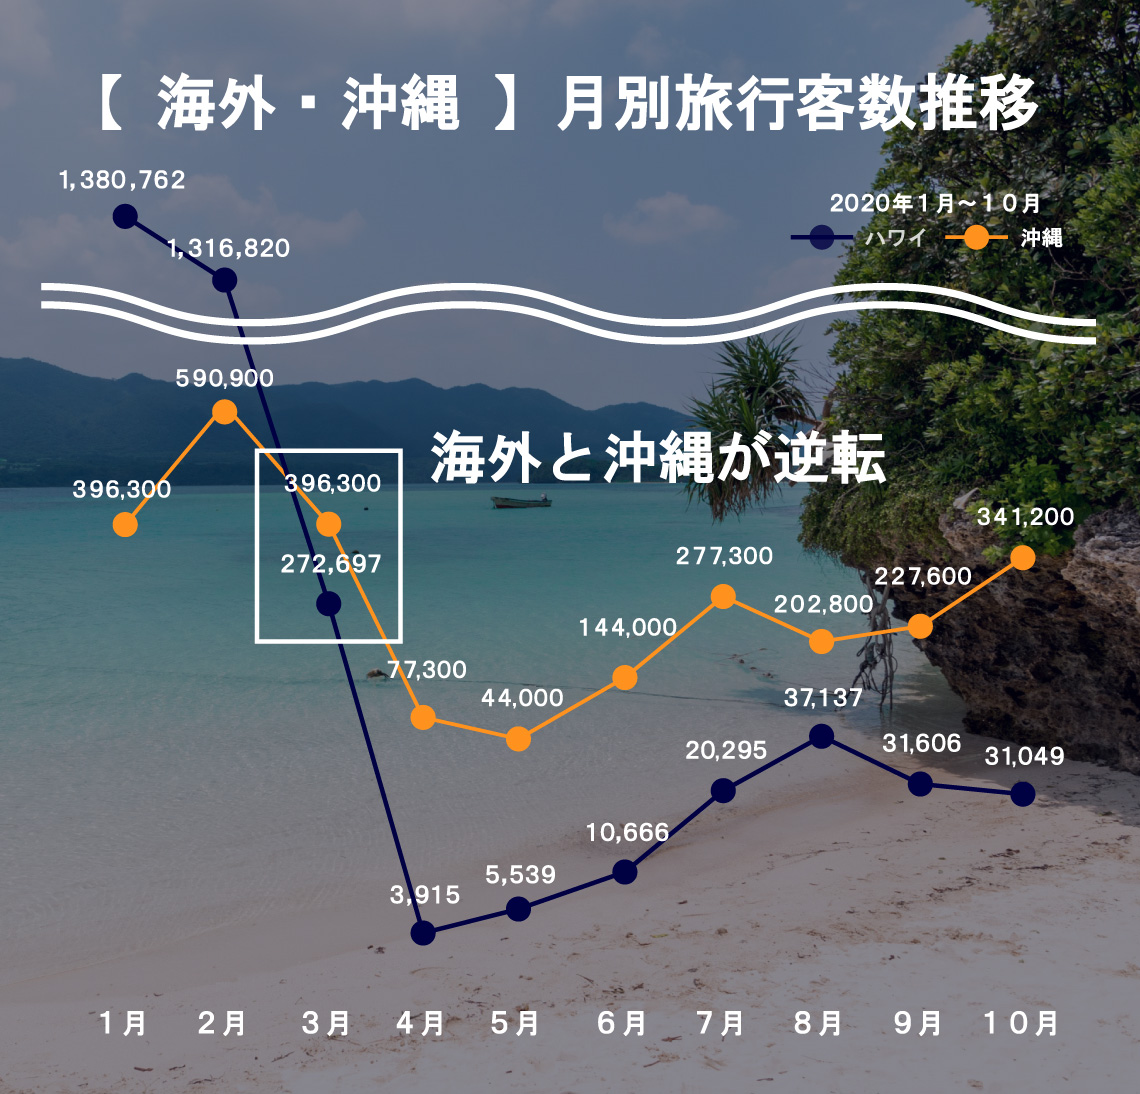 海外・沖縄における月別旅行客数の推移